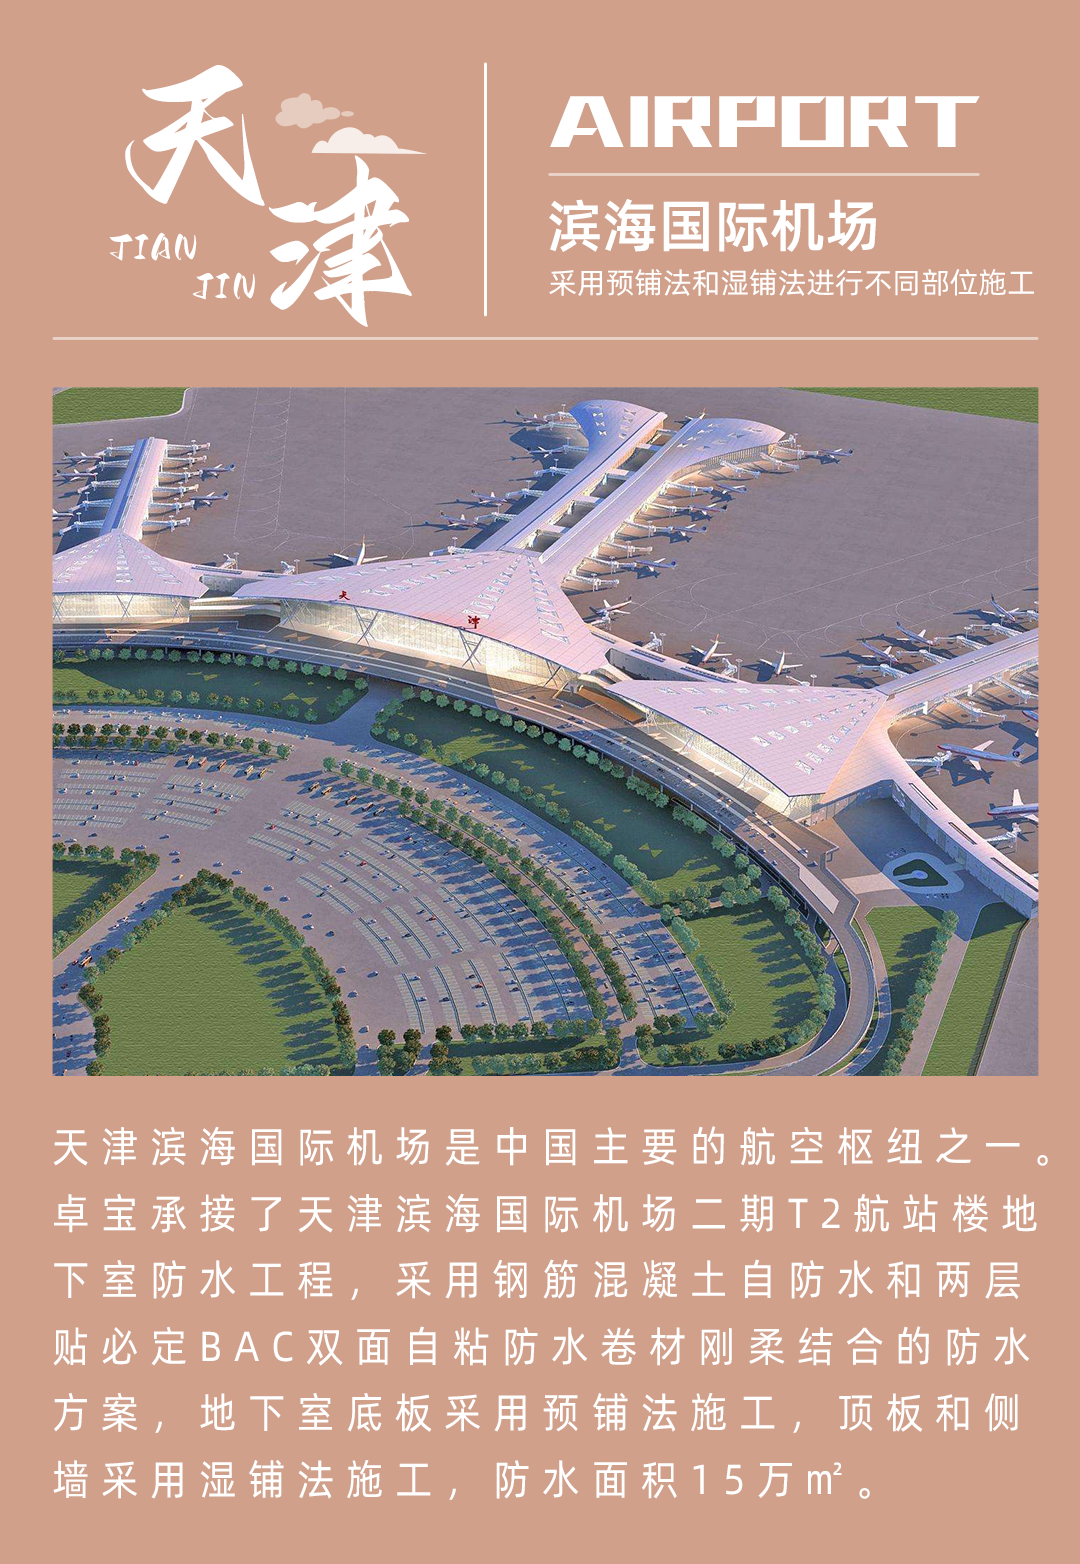 4、天津滨海国际机场.jpg